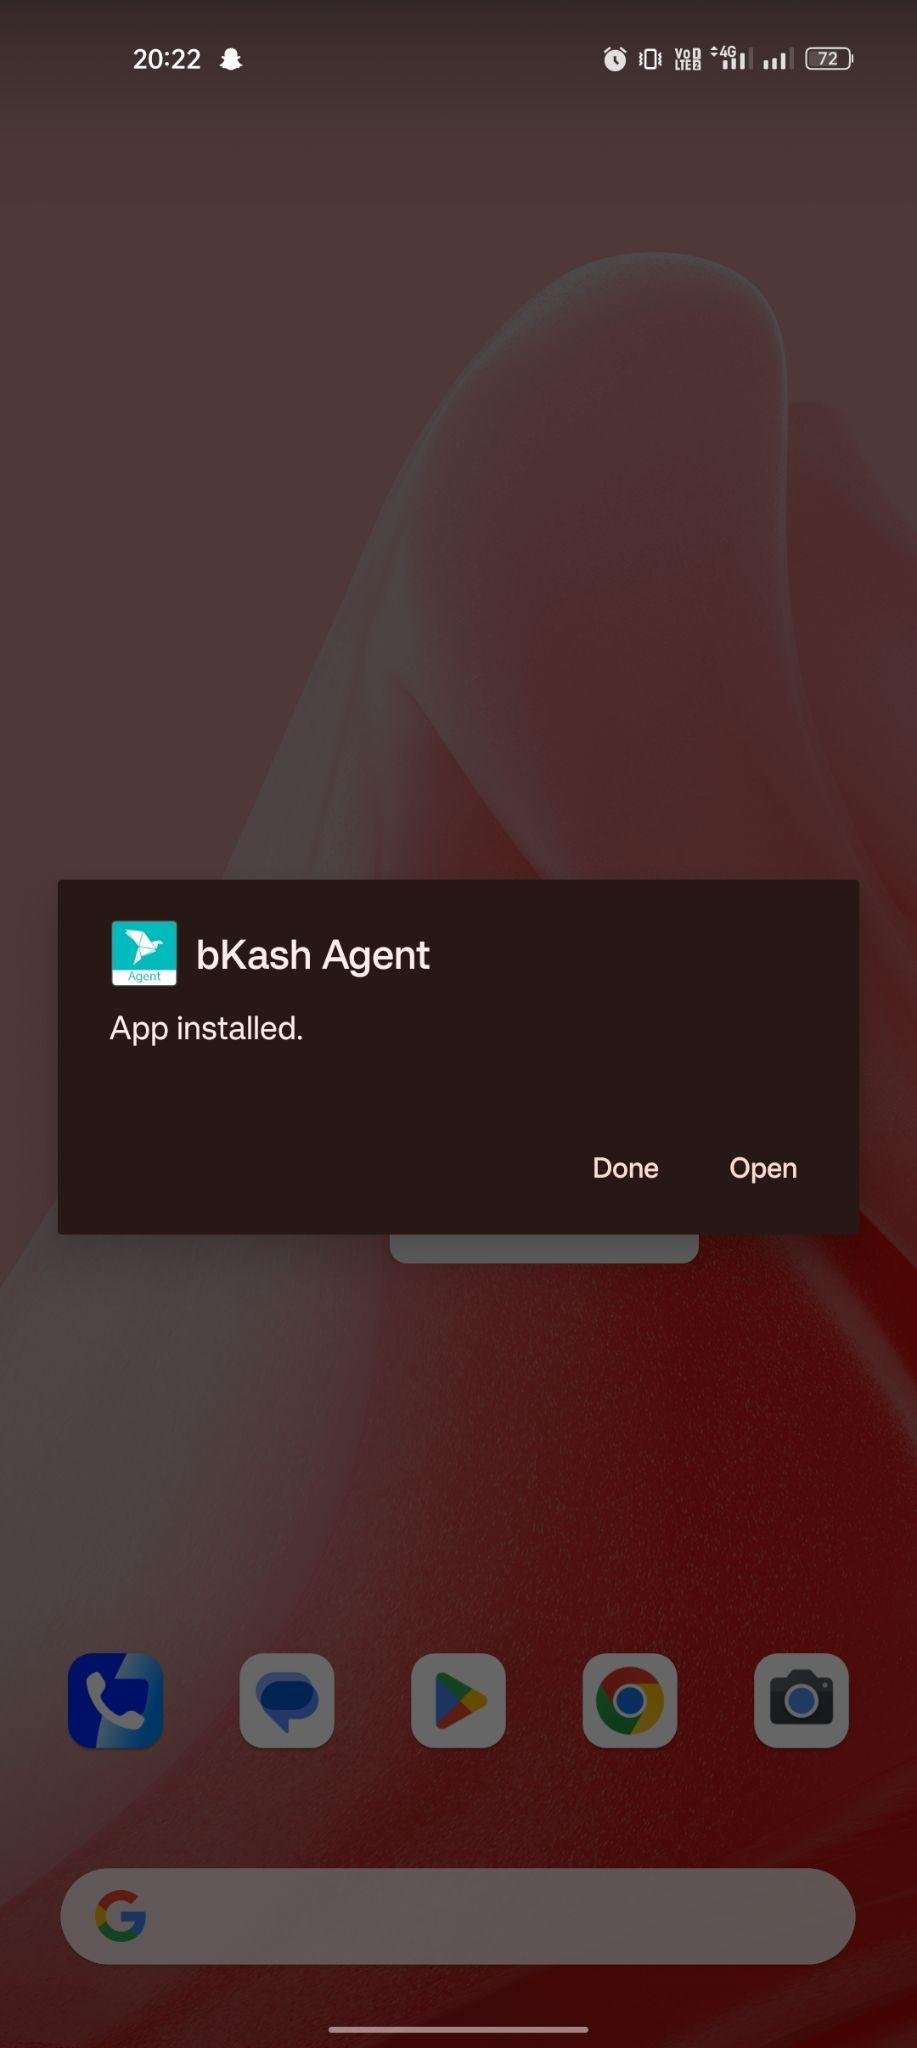 bKash Agent apk installed